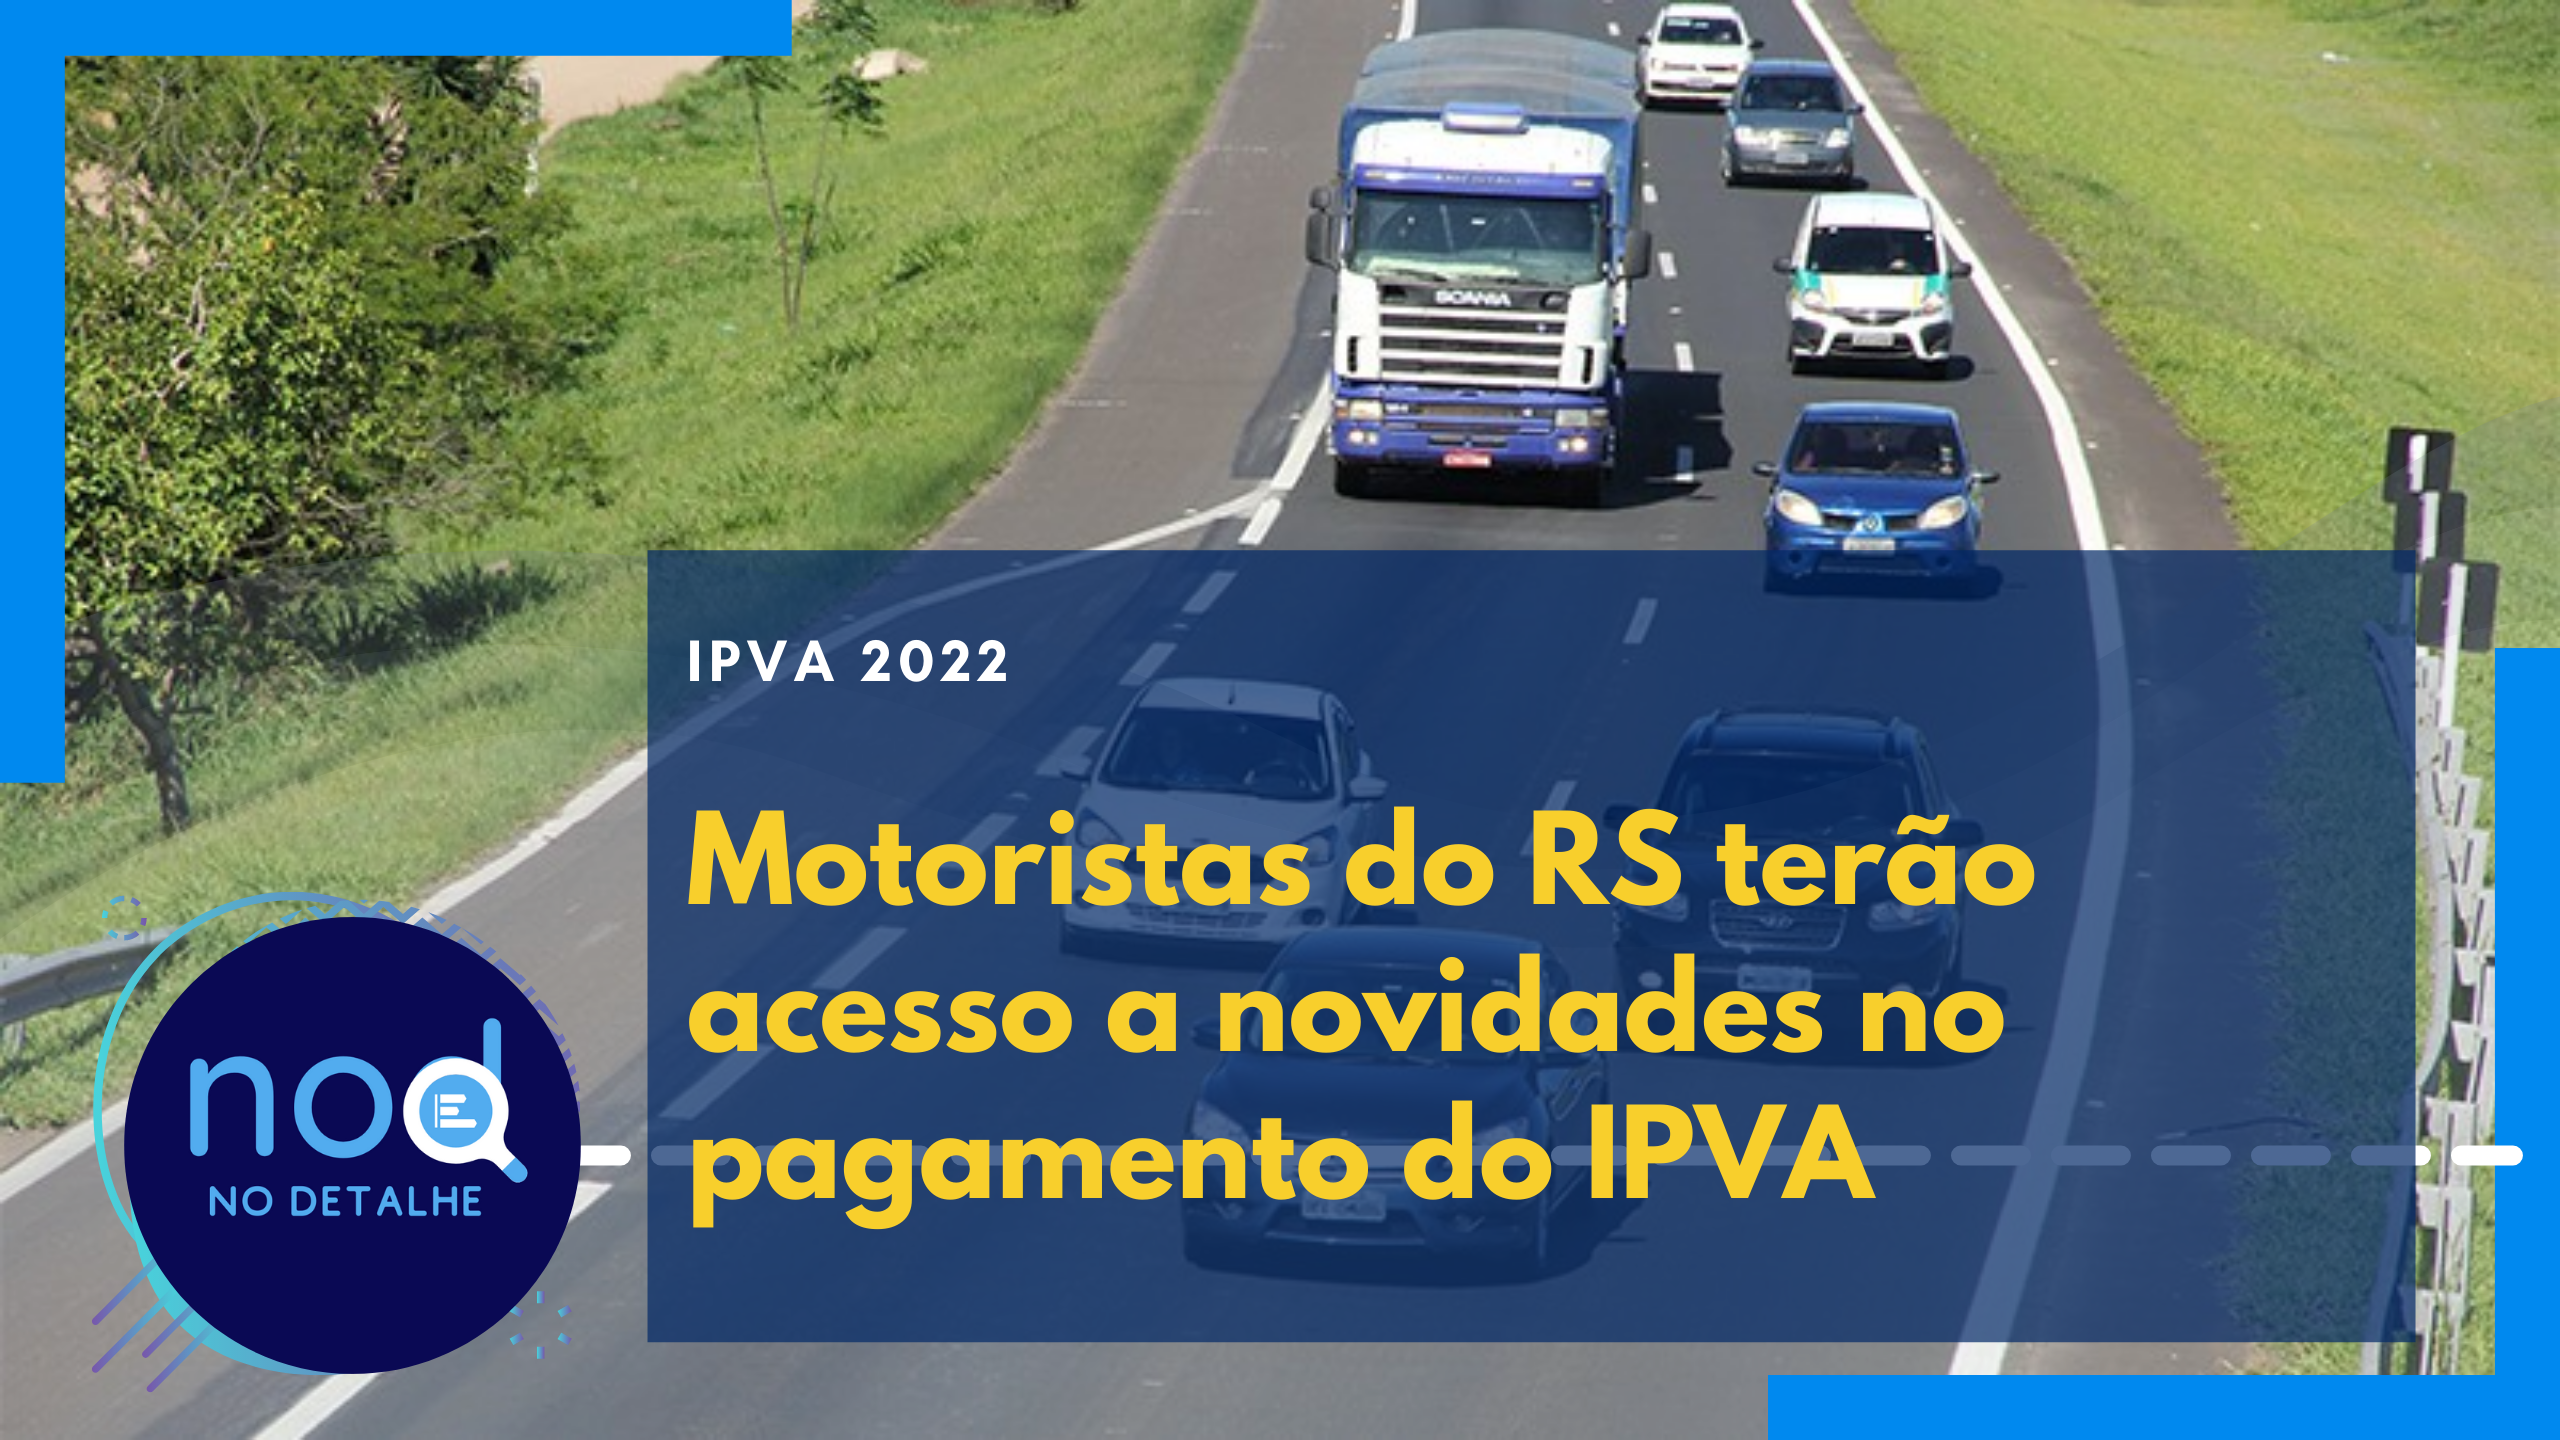 Motoristas do RS terão acesso a novidades no pagamento do IPVA